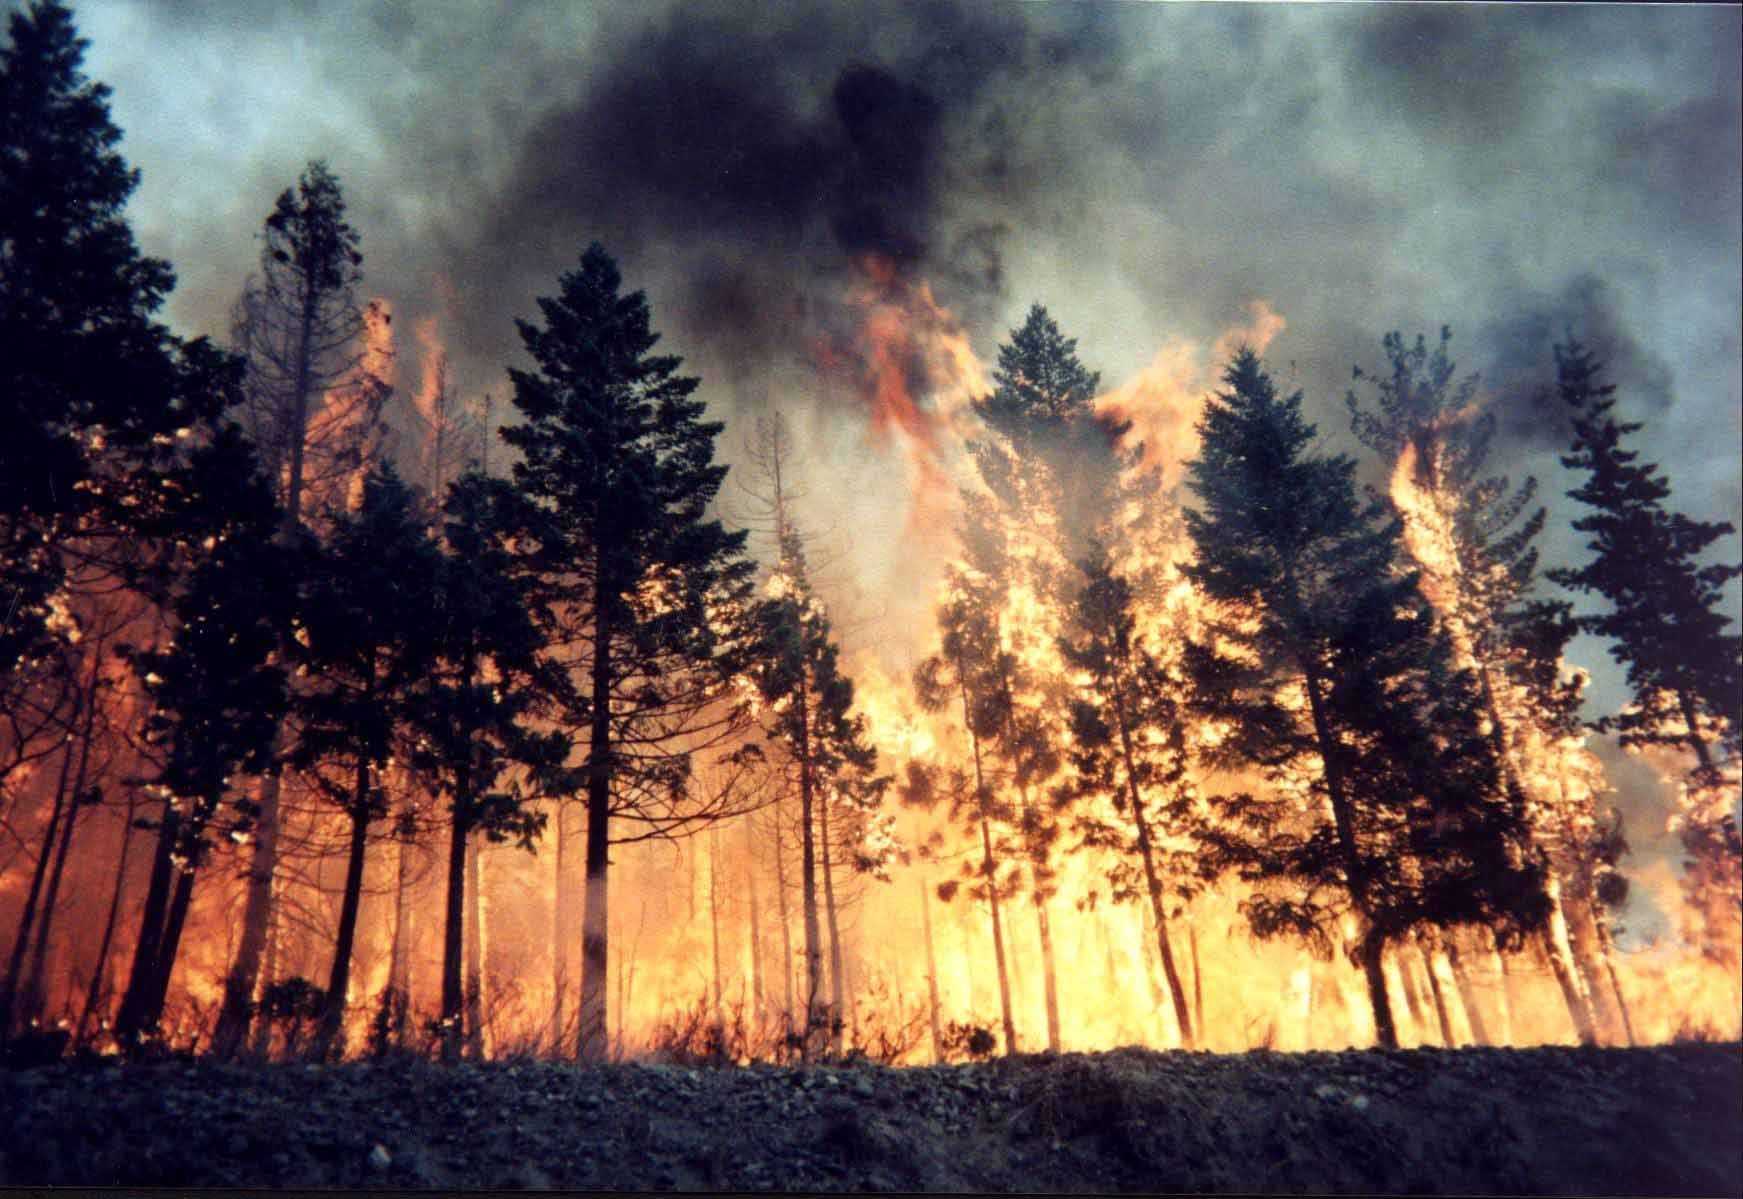 Обращение руководства лесхоза по пожарам